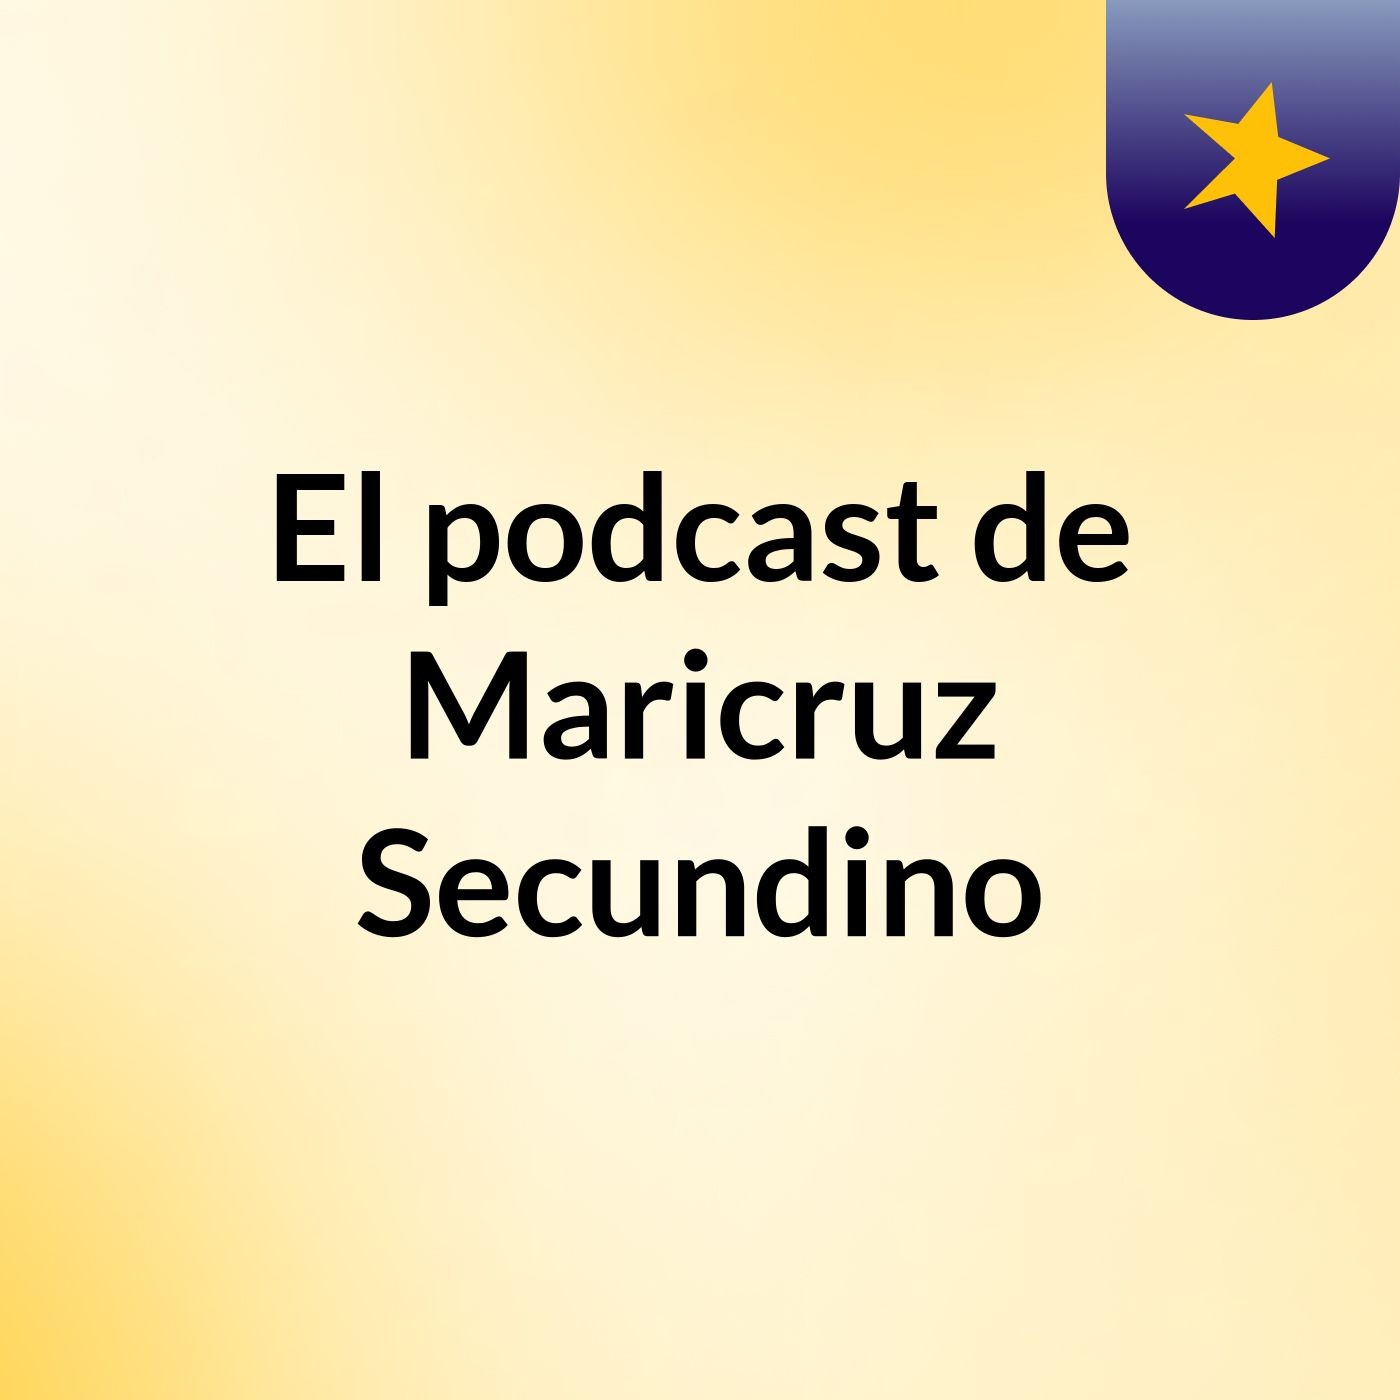 El podcast de Maricruz Secundino